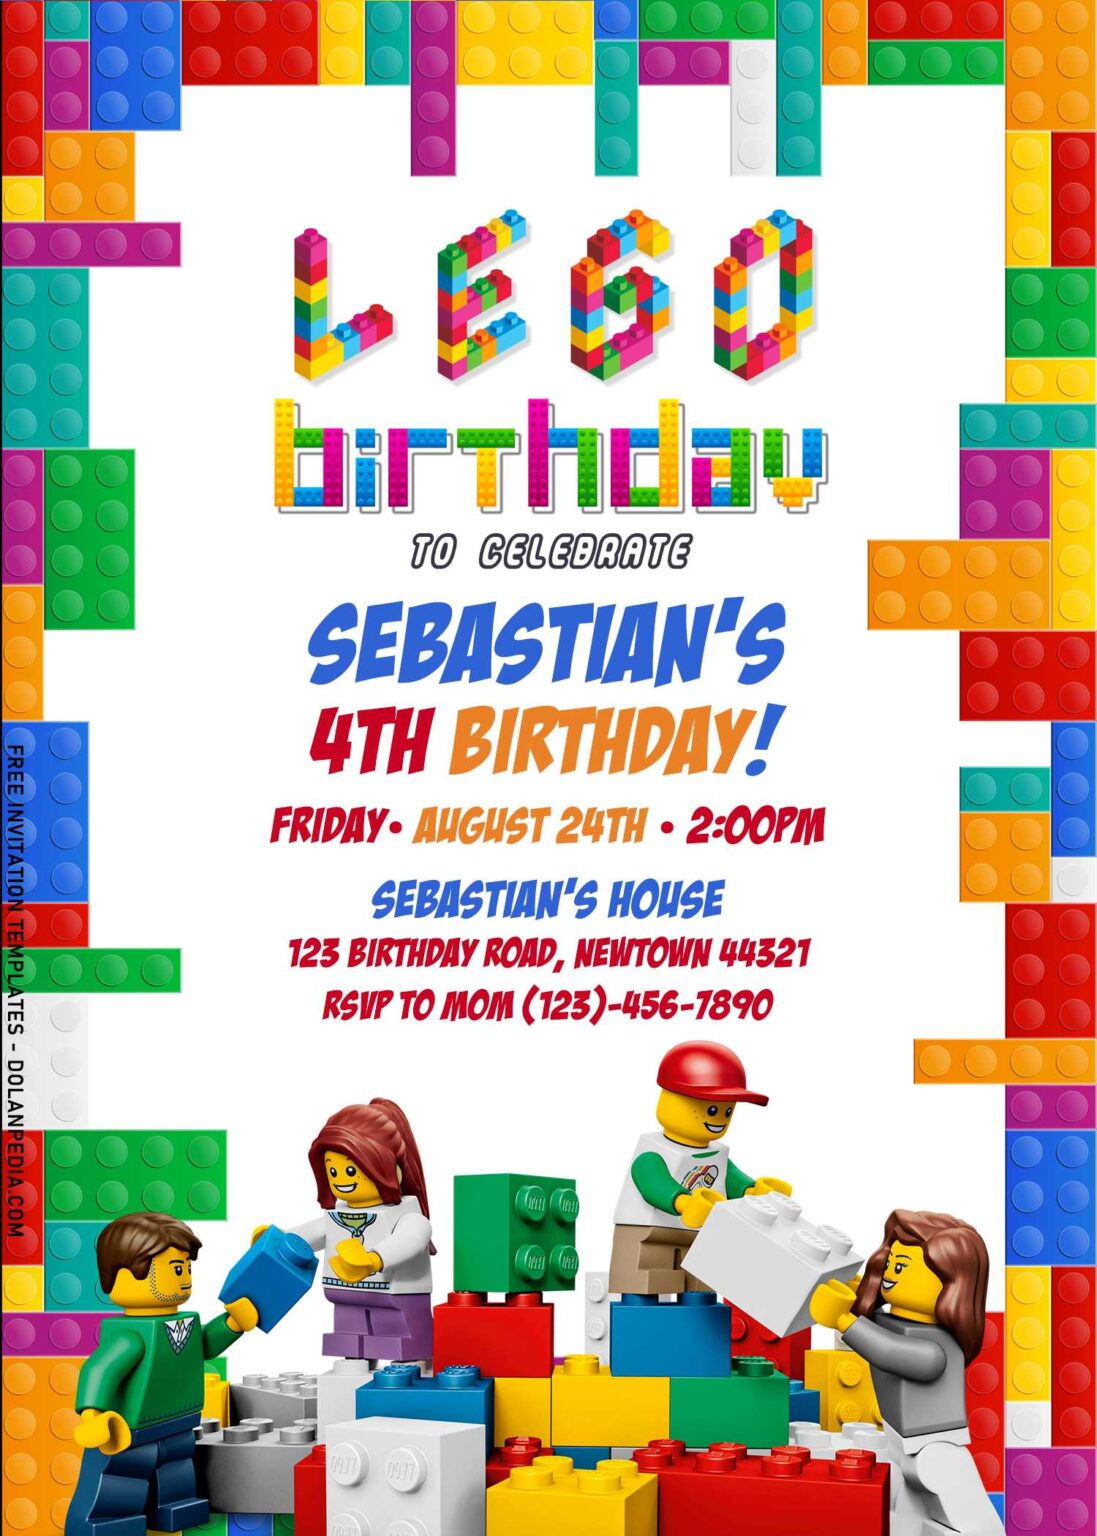 9-lego-birthday-invitation-templates-for-kids-birthday-party-dolanpedia